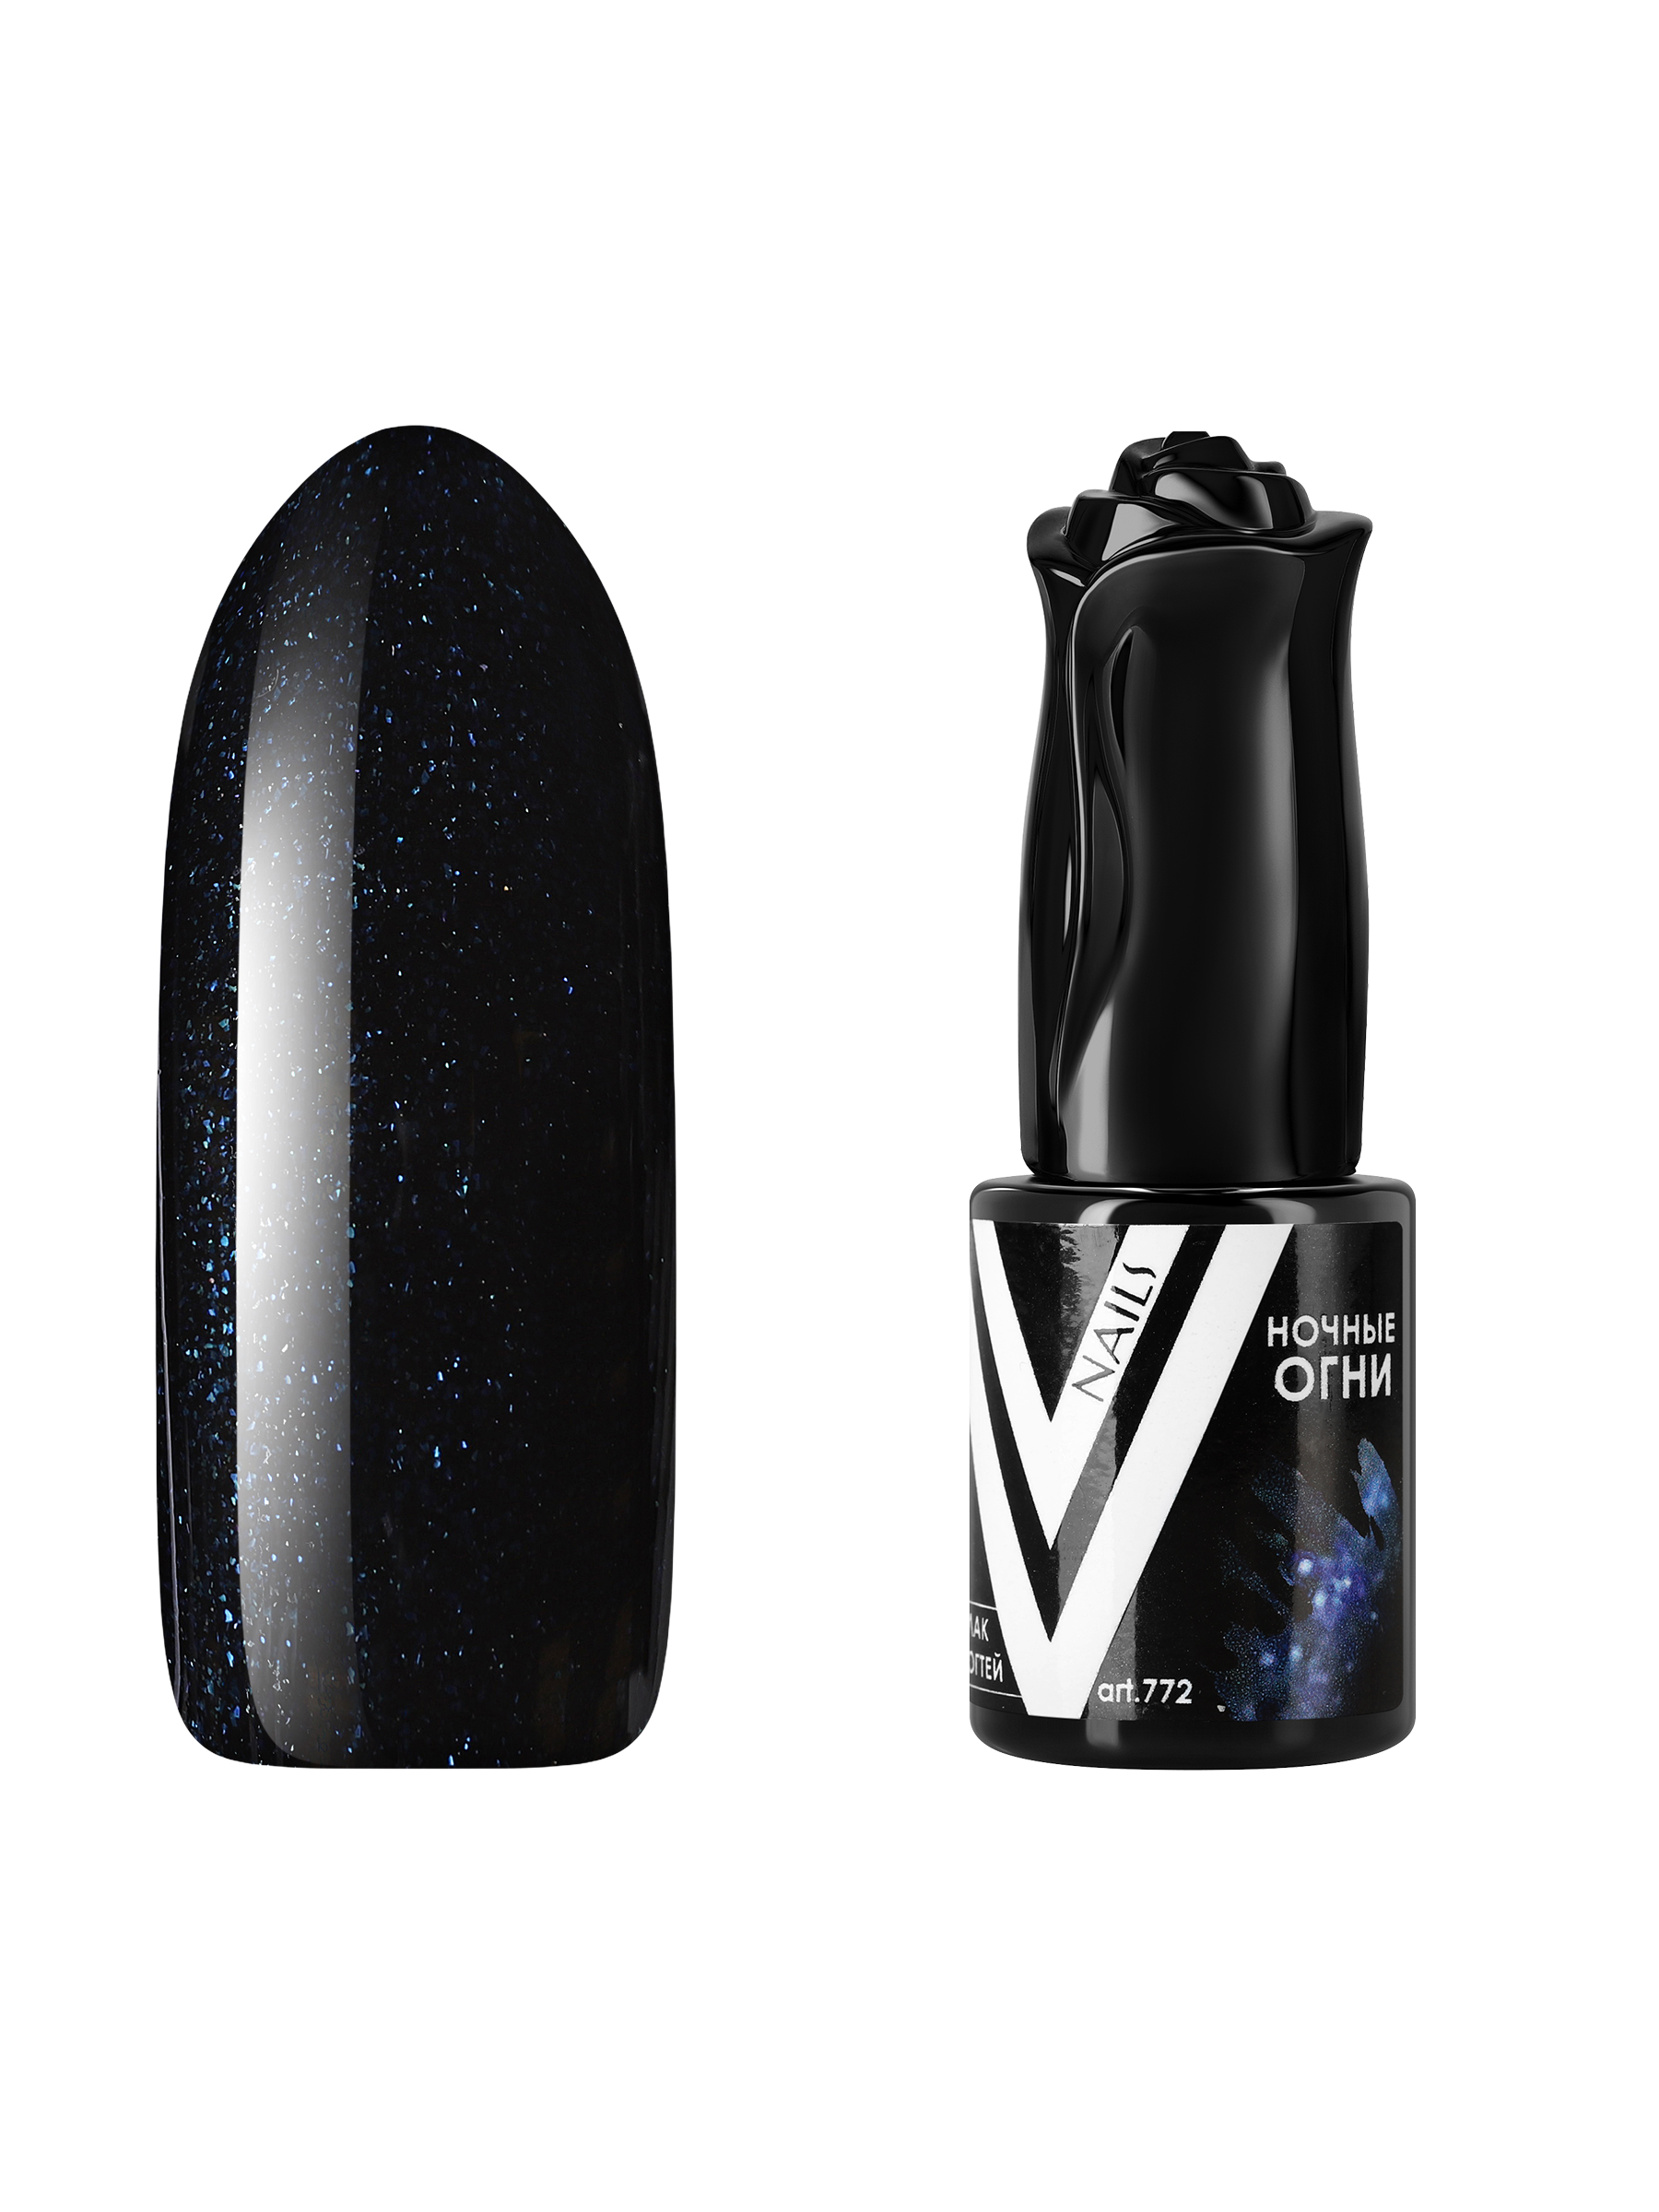 Гель-лак для ногтей с блестками Vogue Nails плотный, насыщенный, темный, черный, 10 мл церковная свеча из воска 120 темный натуральный 1кг